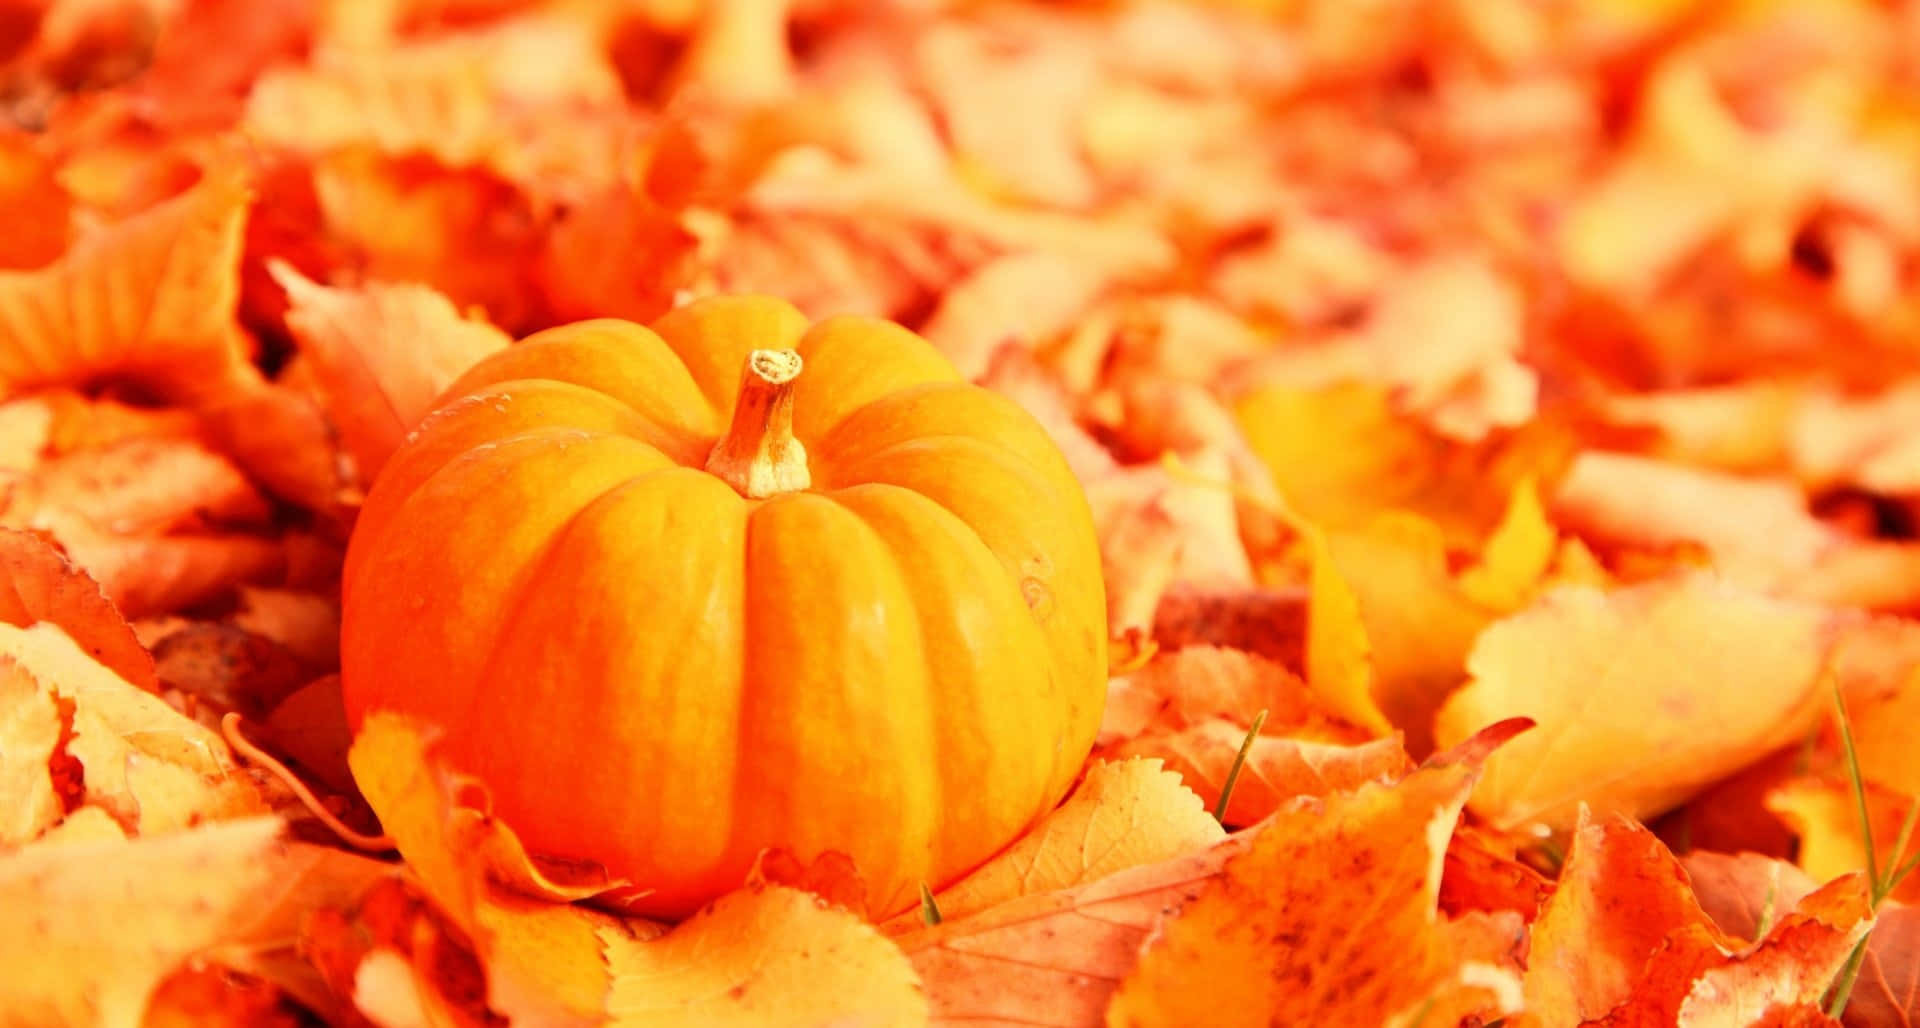 Orange Pumpkin Tumblr Autumn Desktop Wallpaper